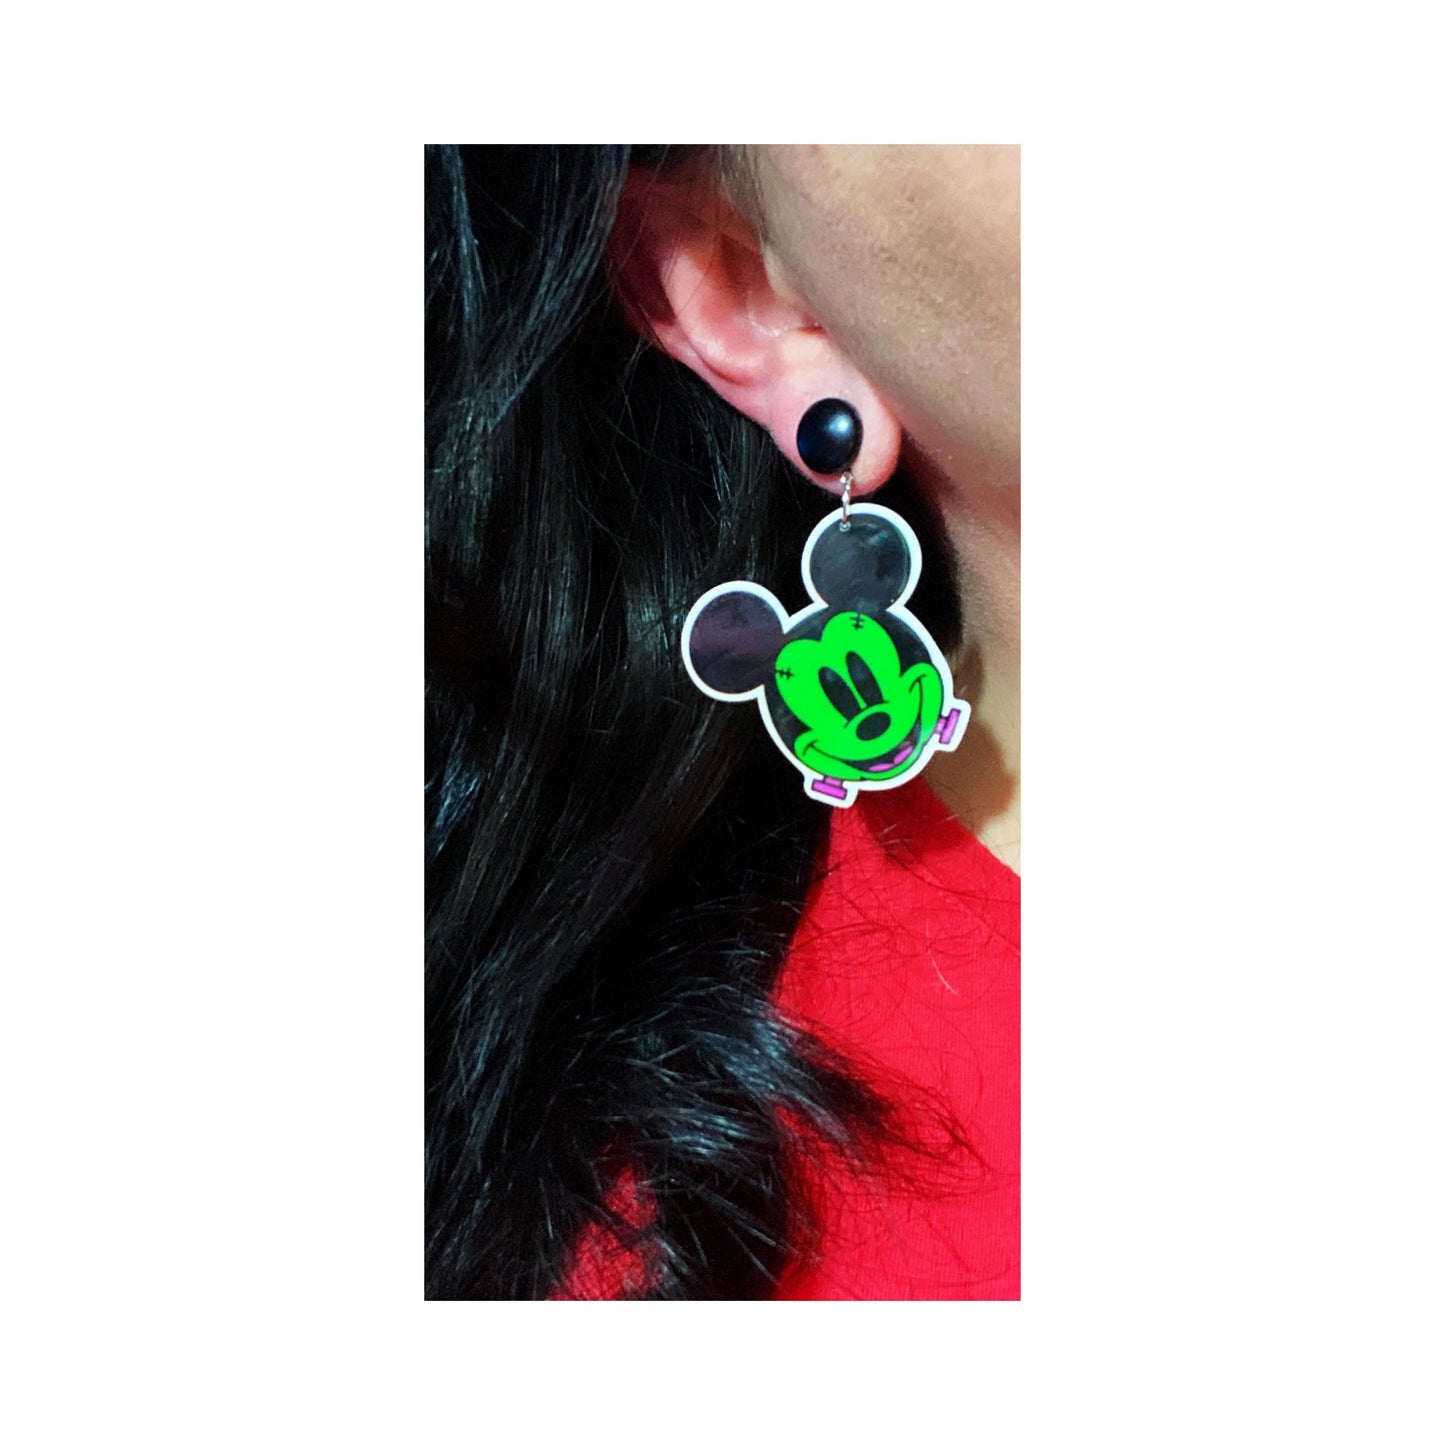 Franky Mouse Drop Earrings